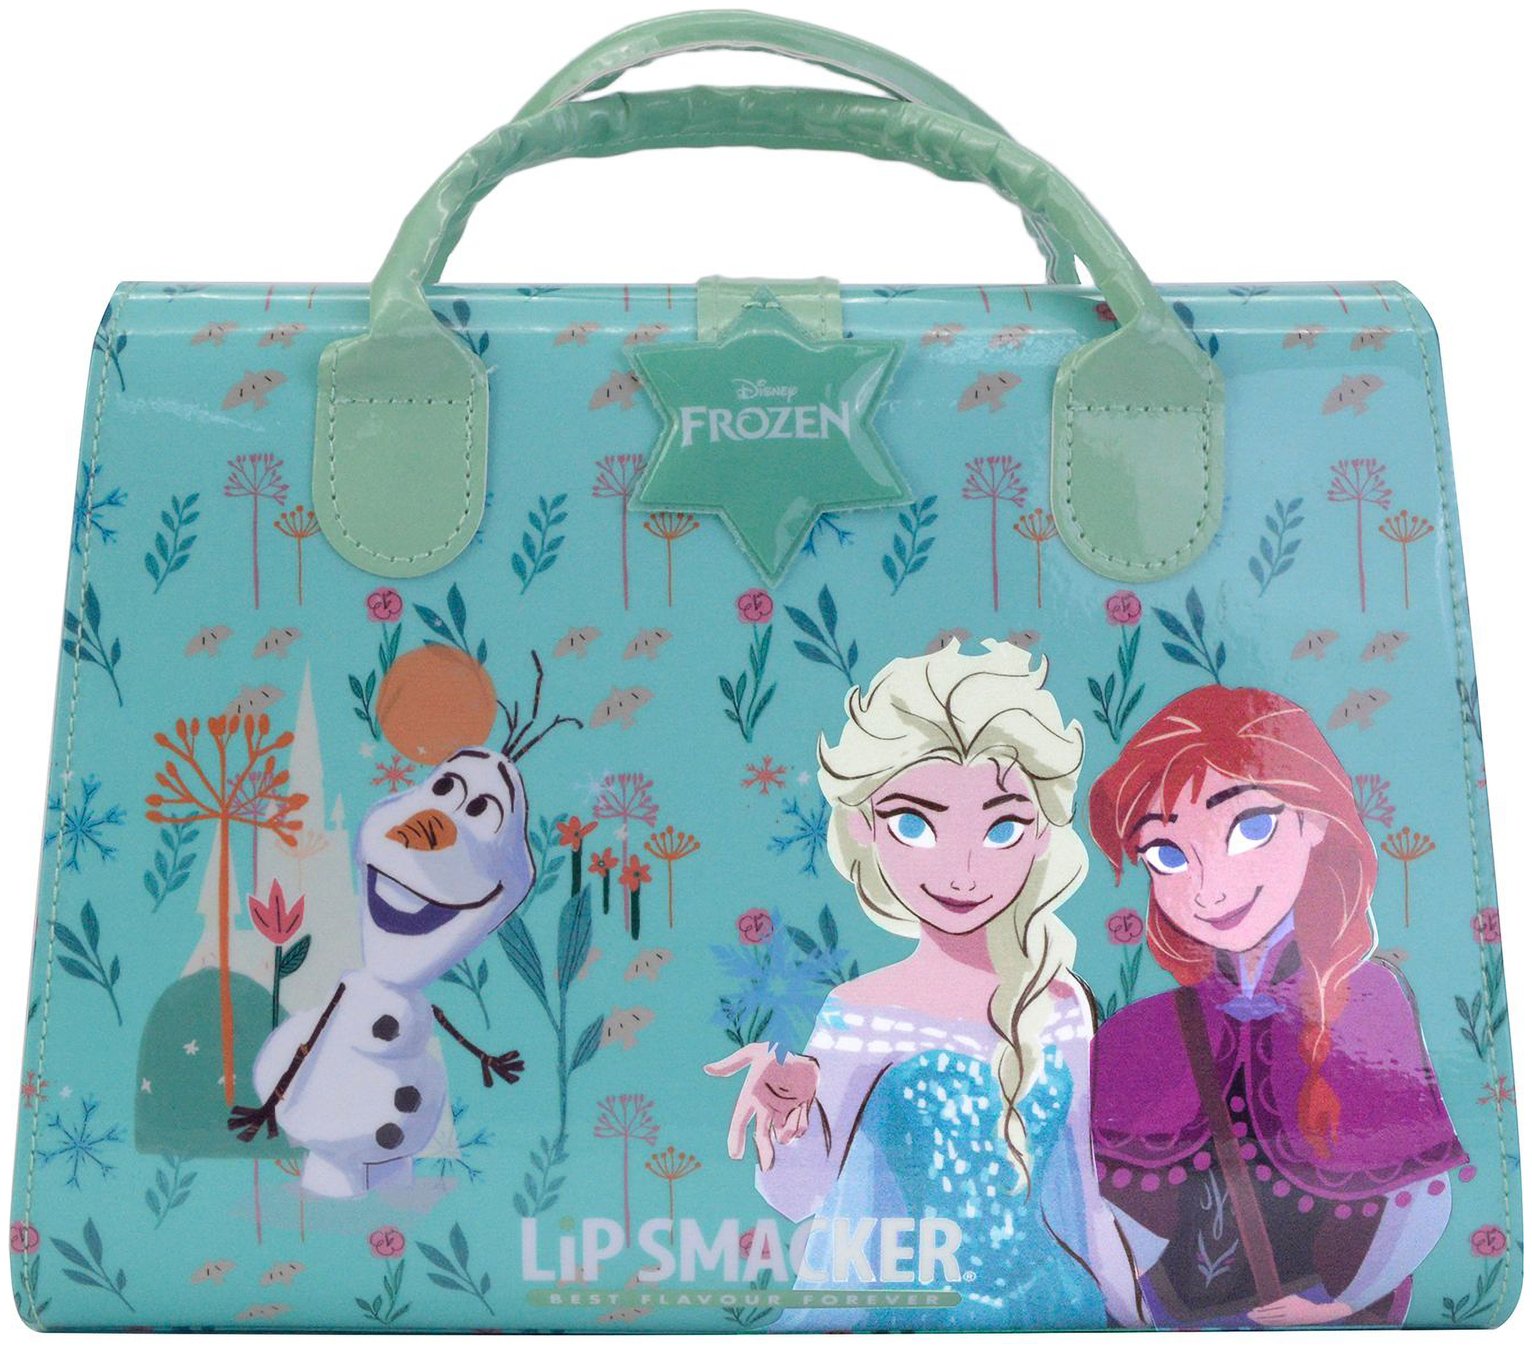 Lip Smacker Disney Frozen Weekender Case - Tote Shape